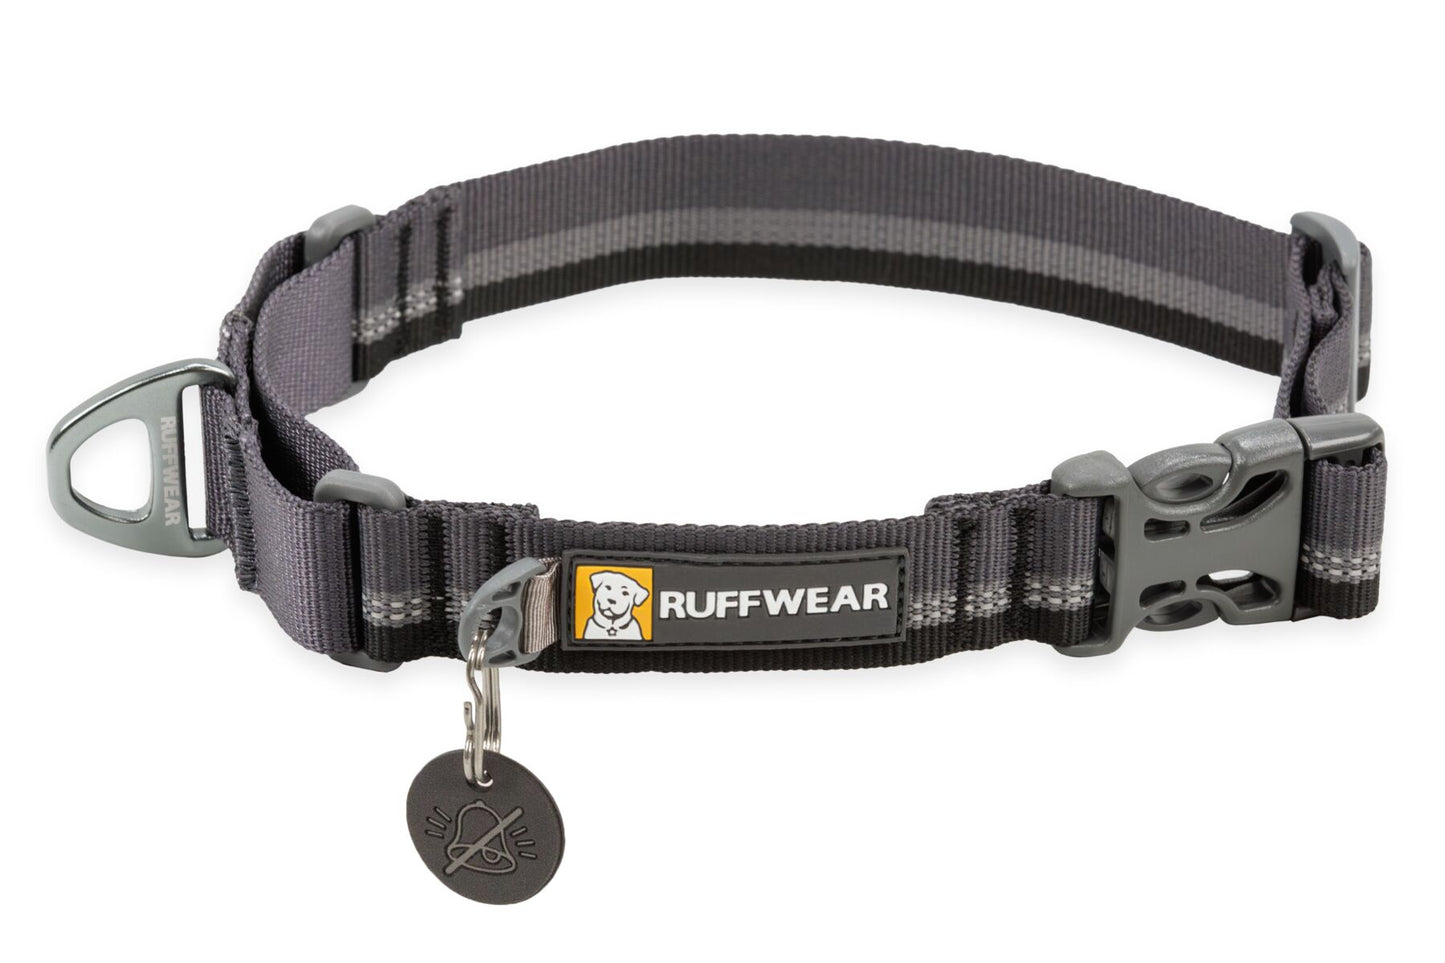 Ruffwear - Web Reaction Martingale Collar